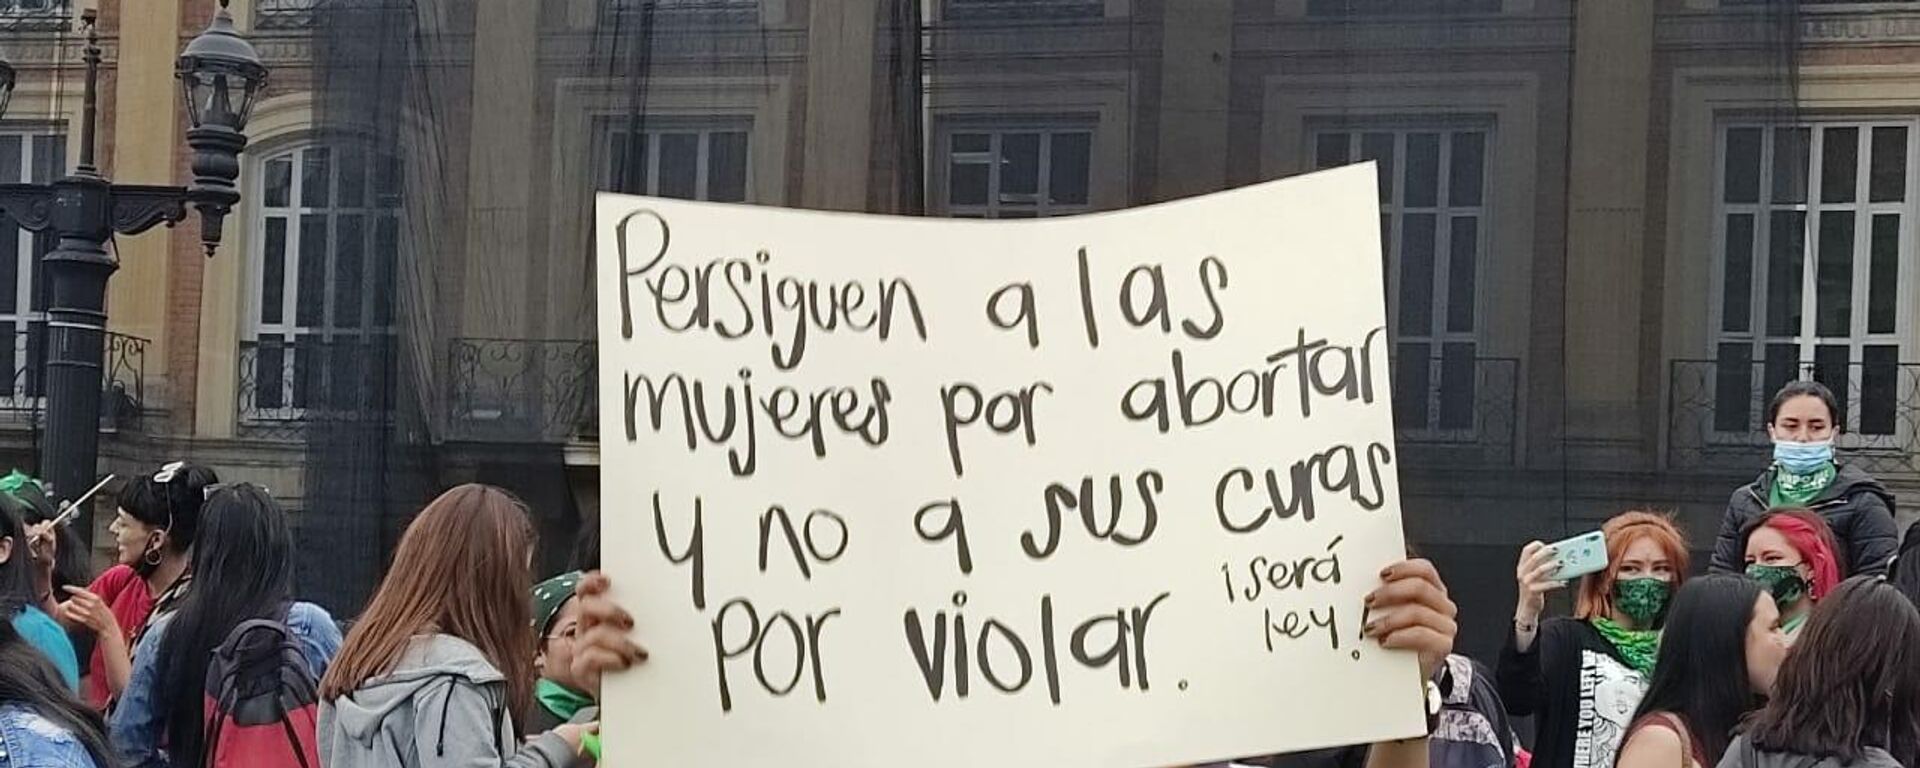 Feministas marchan en Colombia por la despenalización del aborto - Sputnik Mundo, 1920, 19.11.2021